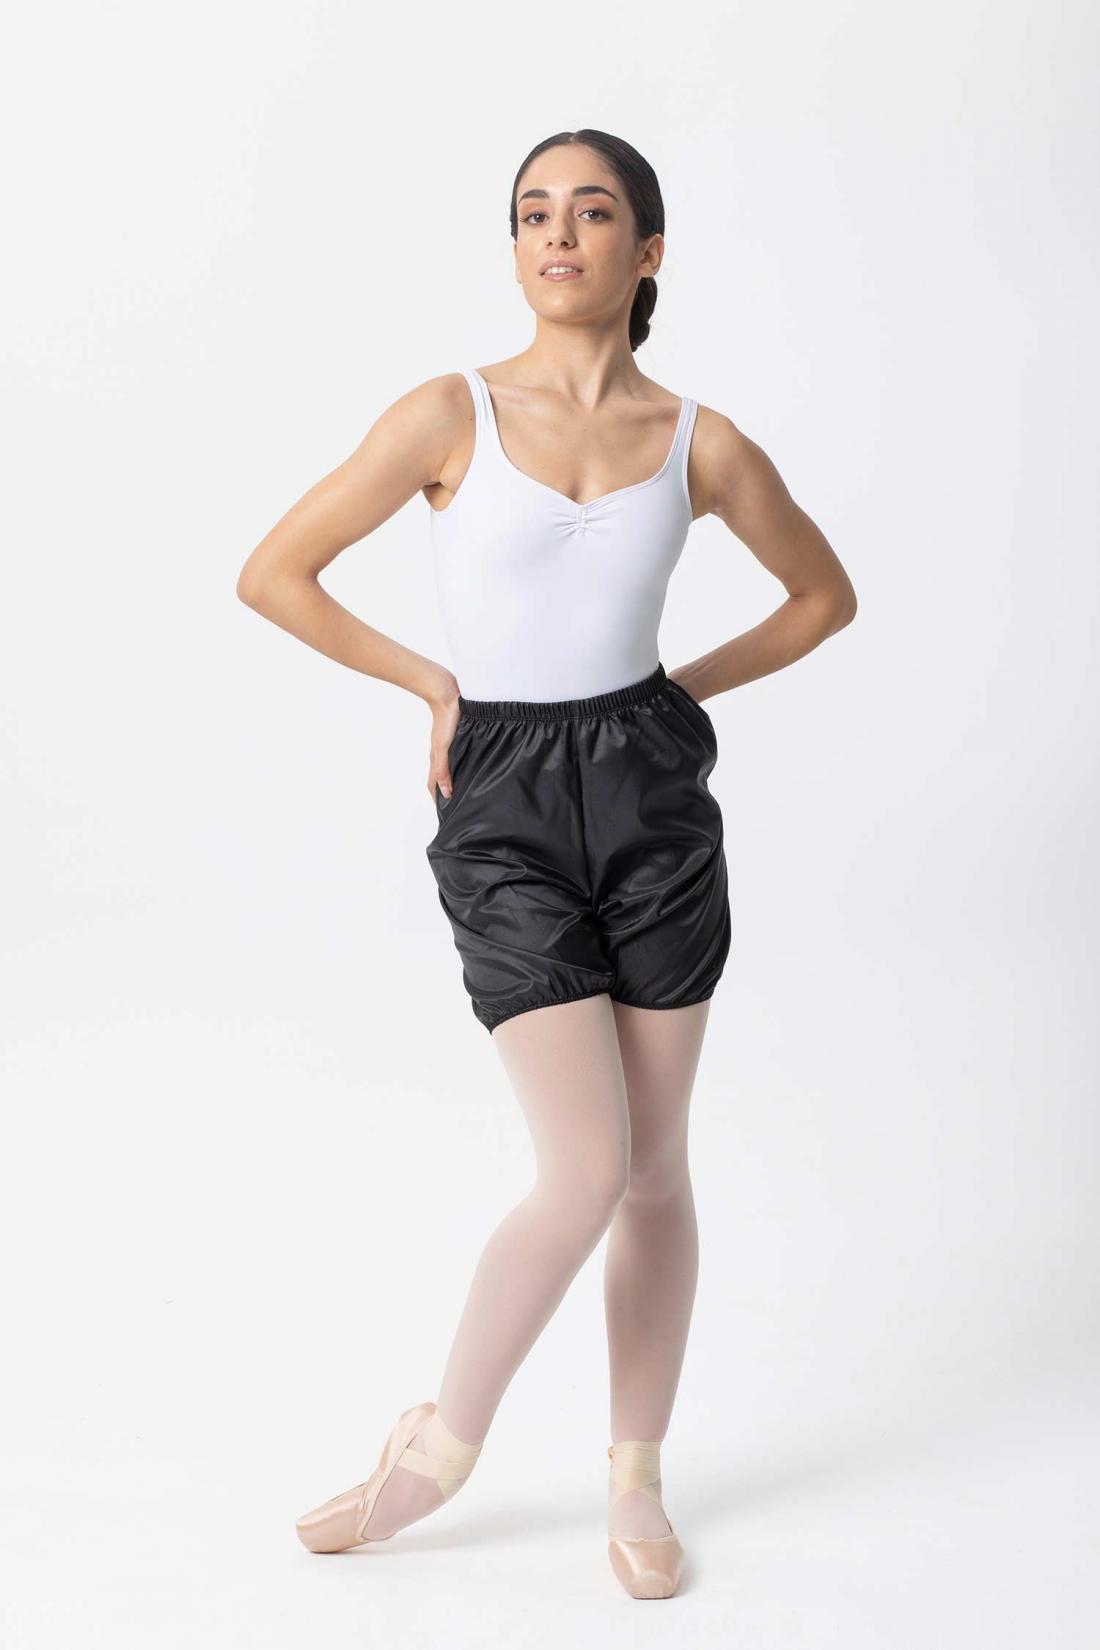 インターメッツォ ウォームアップ トラッシュショーツ Intermezzo Warm up Trash Shorts ballet dance perspiration pants